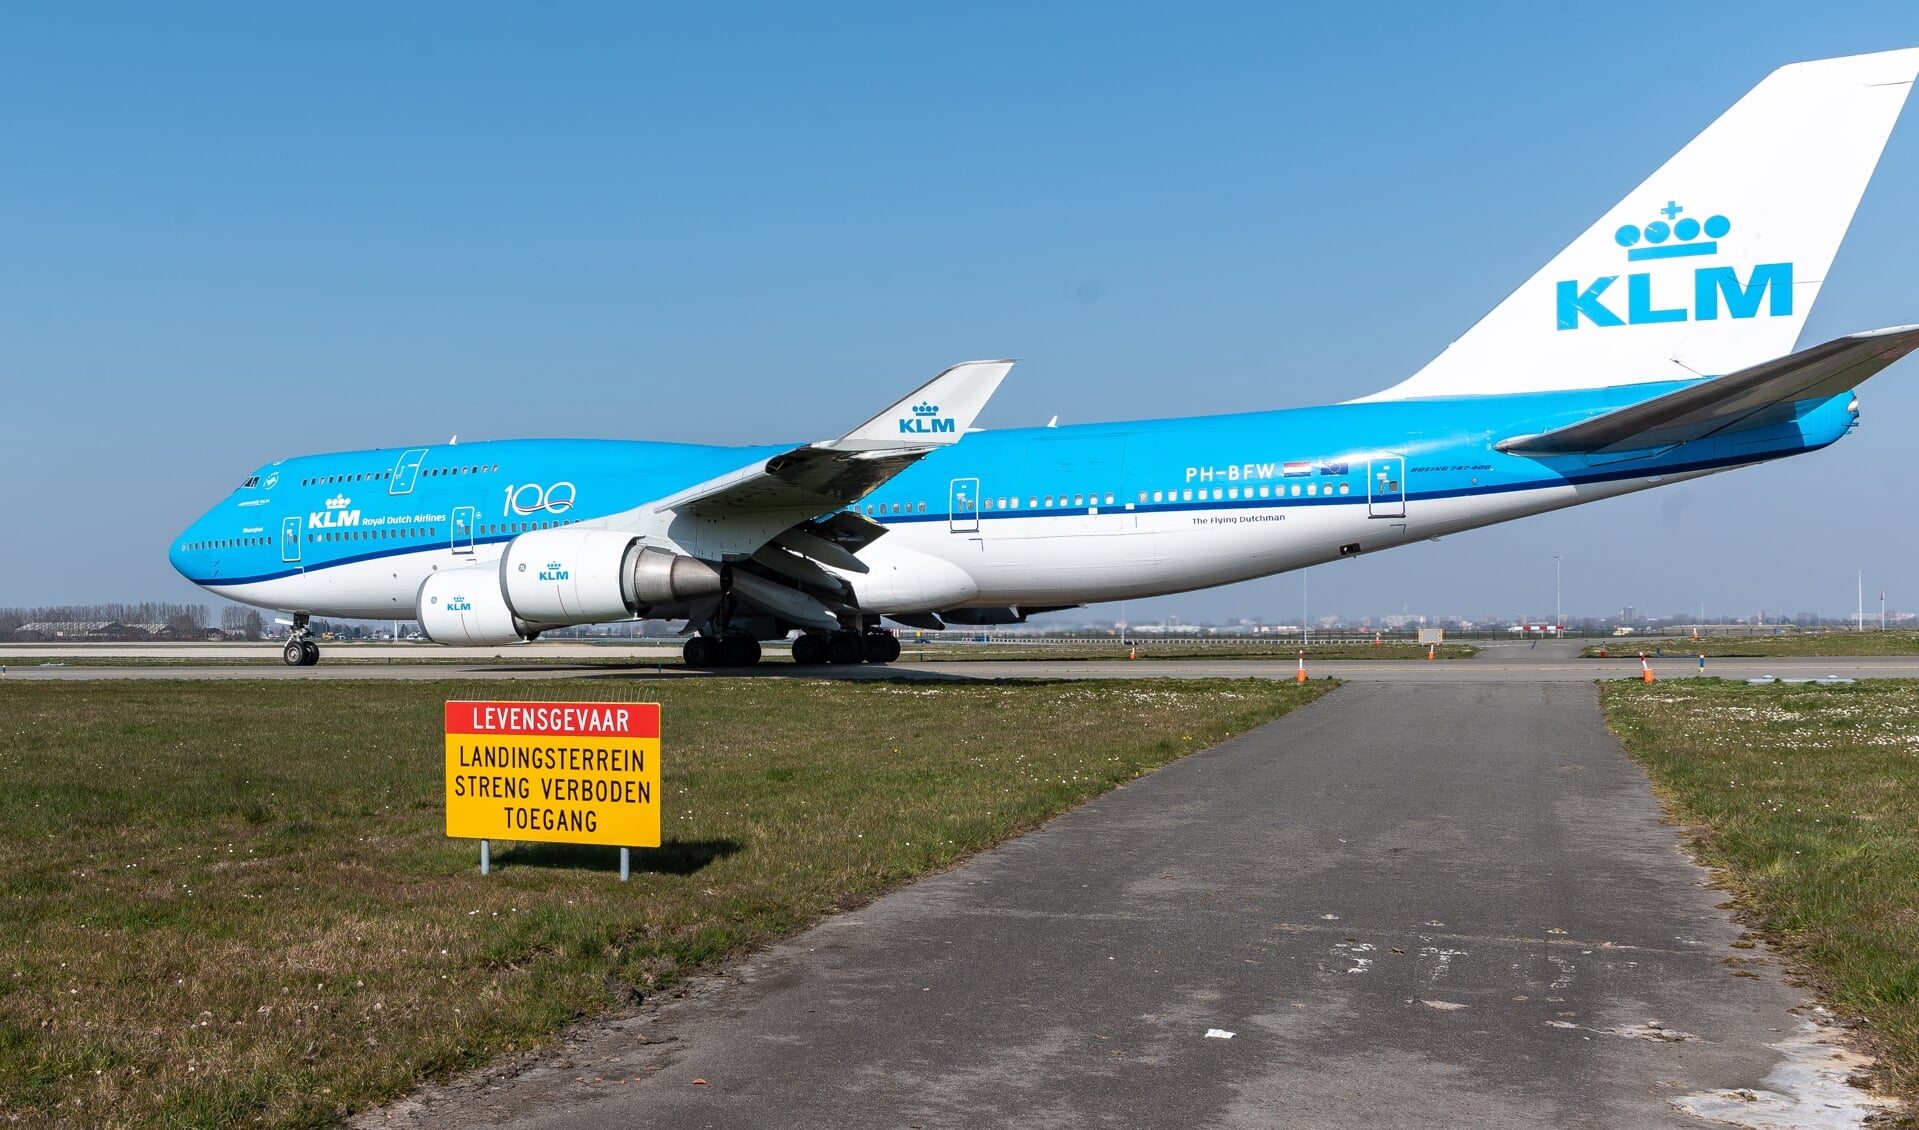 De KLM 747-toestellen zouden 29 maart hun laatste vlucht gehad hebben, dat besluit blijkt nu te voorbarig.